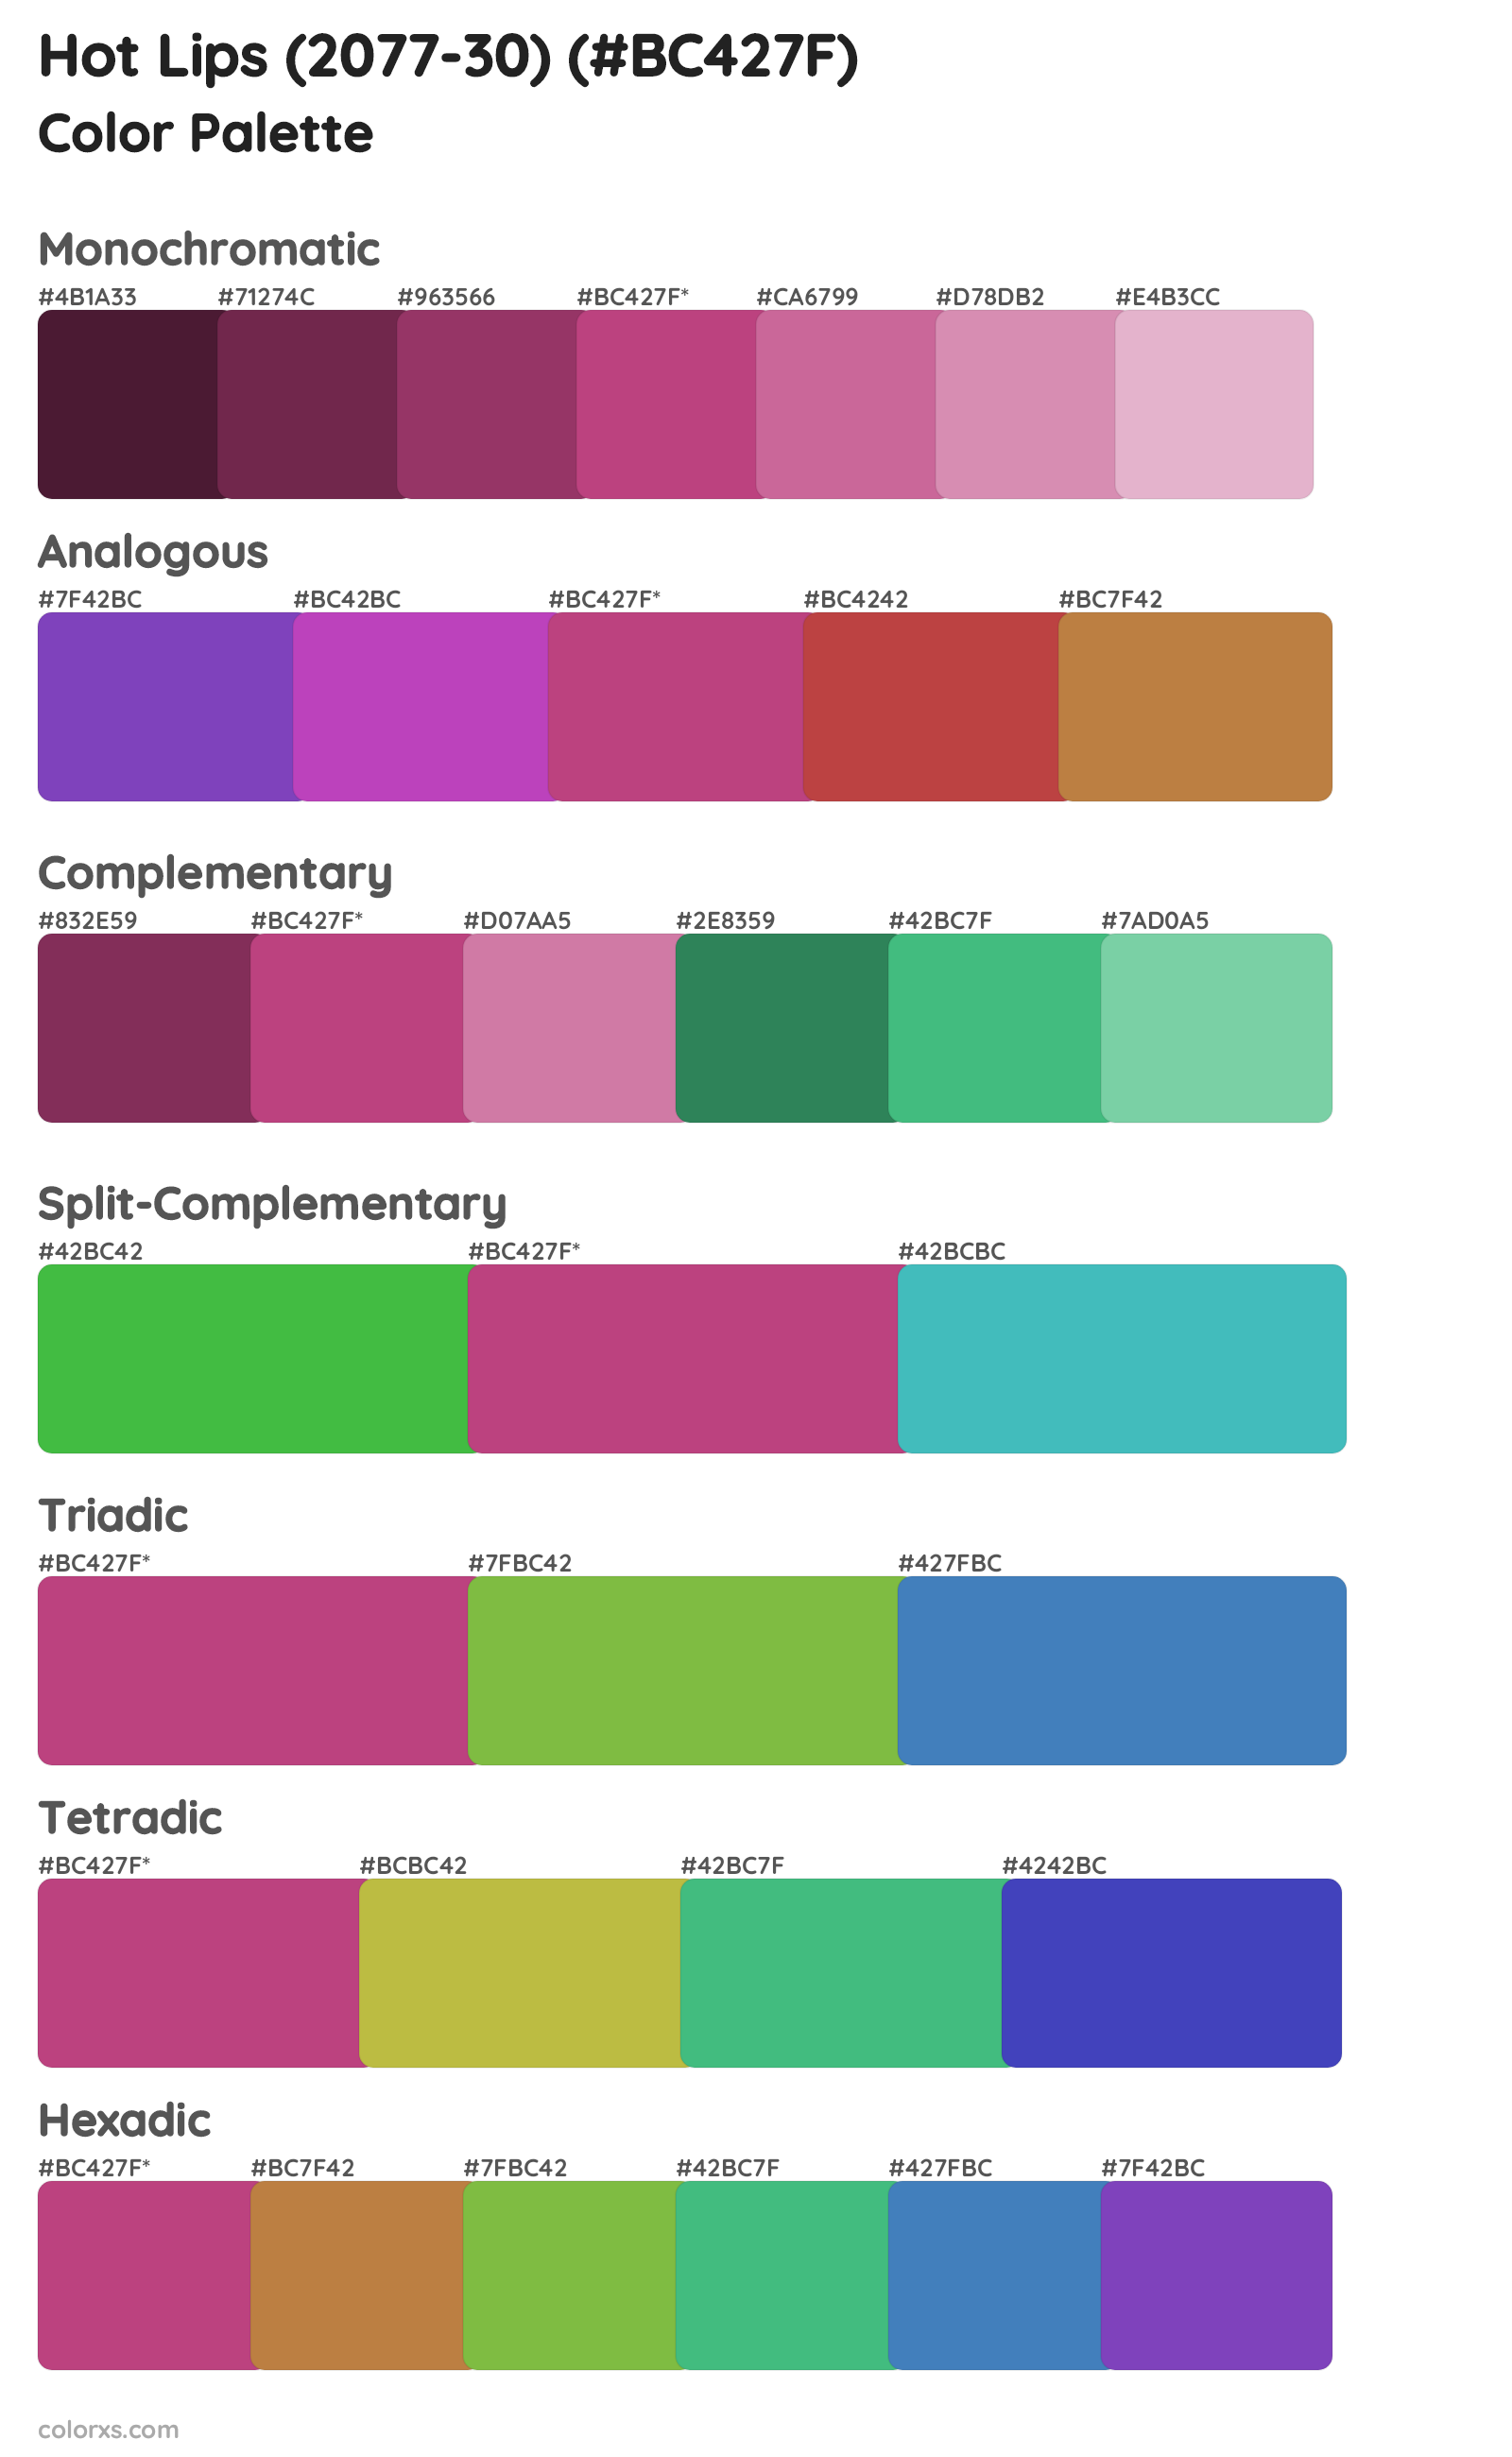 Hot Lips (2077-30) Color Scheme Palettes